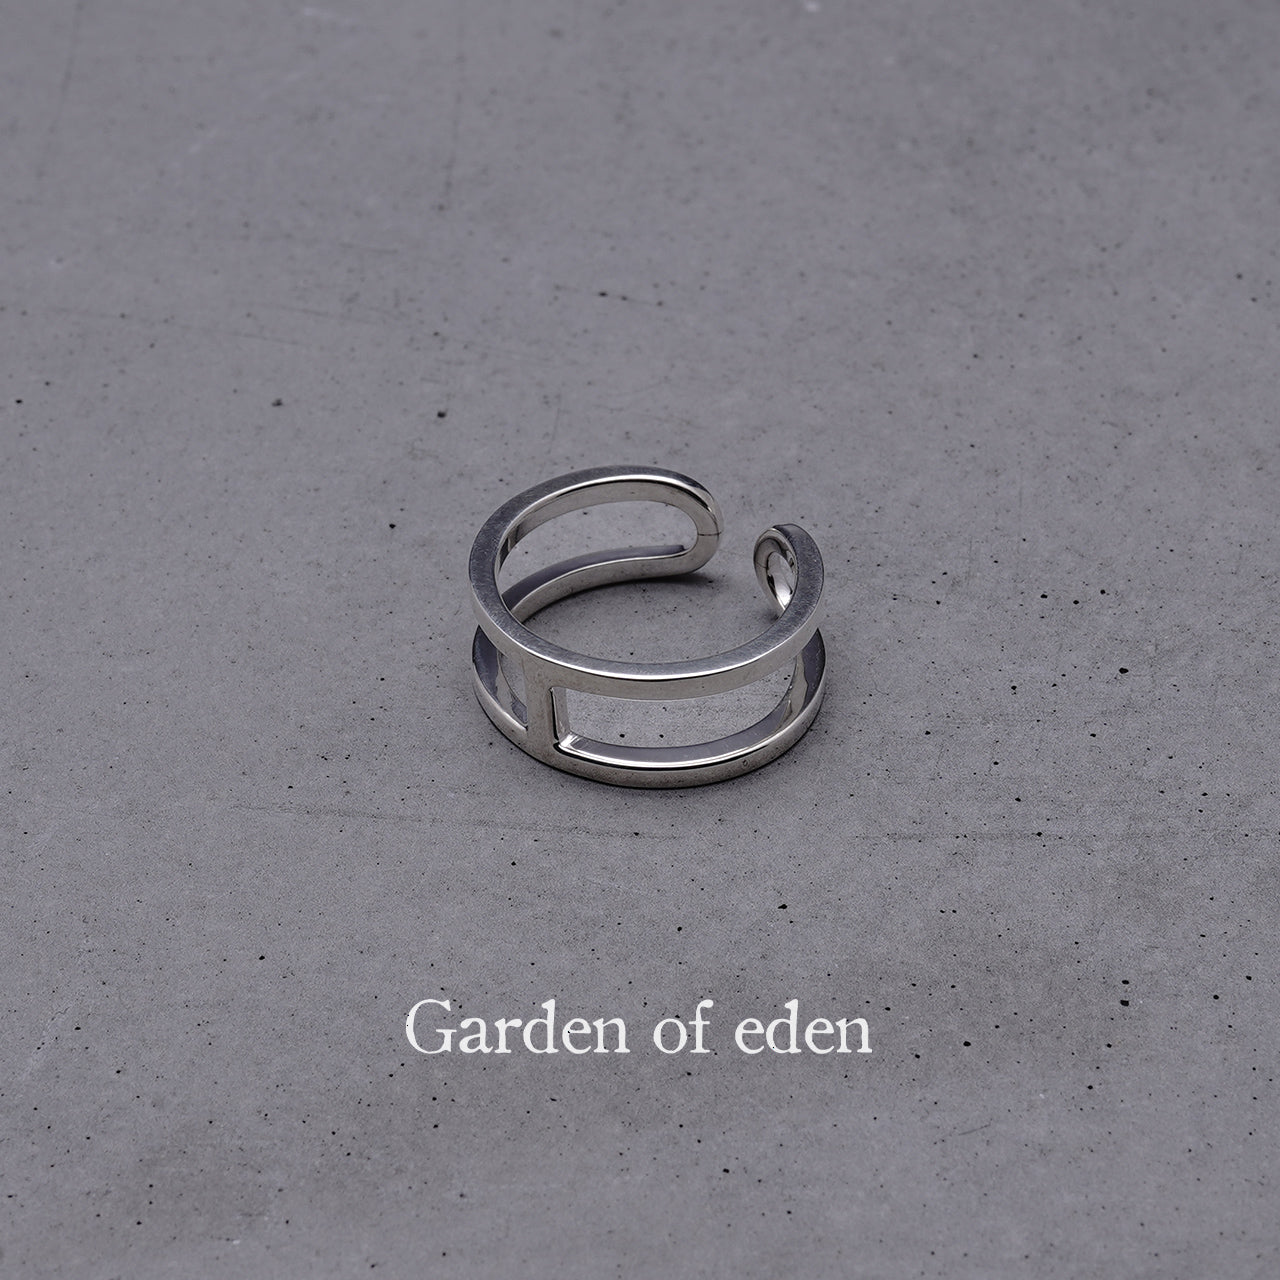 Garden of Eden ガーデンオブエデン アンカー リング ANCHOR RING (SMALL) シルバー925 指輪 イヤーカフ  アクセサリー 22AW012 【送料無料】【クーポン対象外】